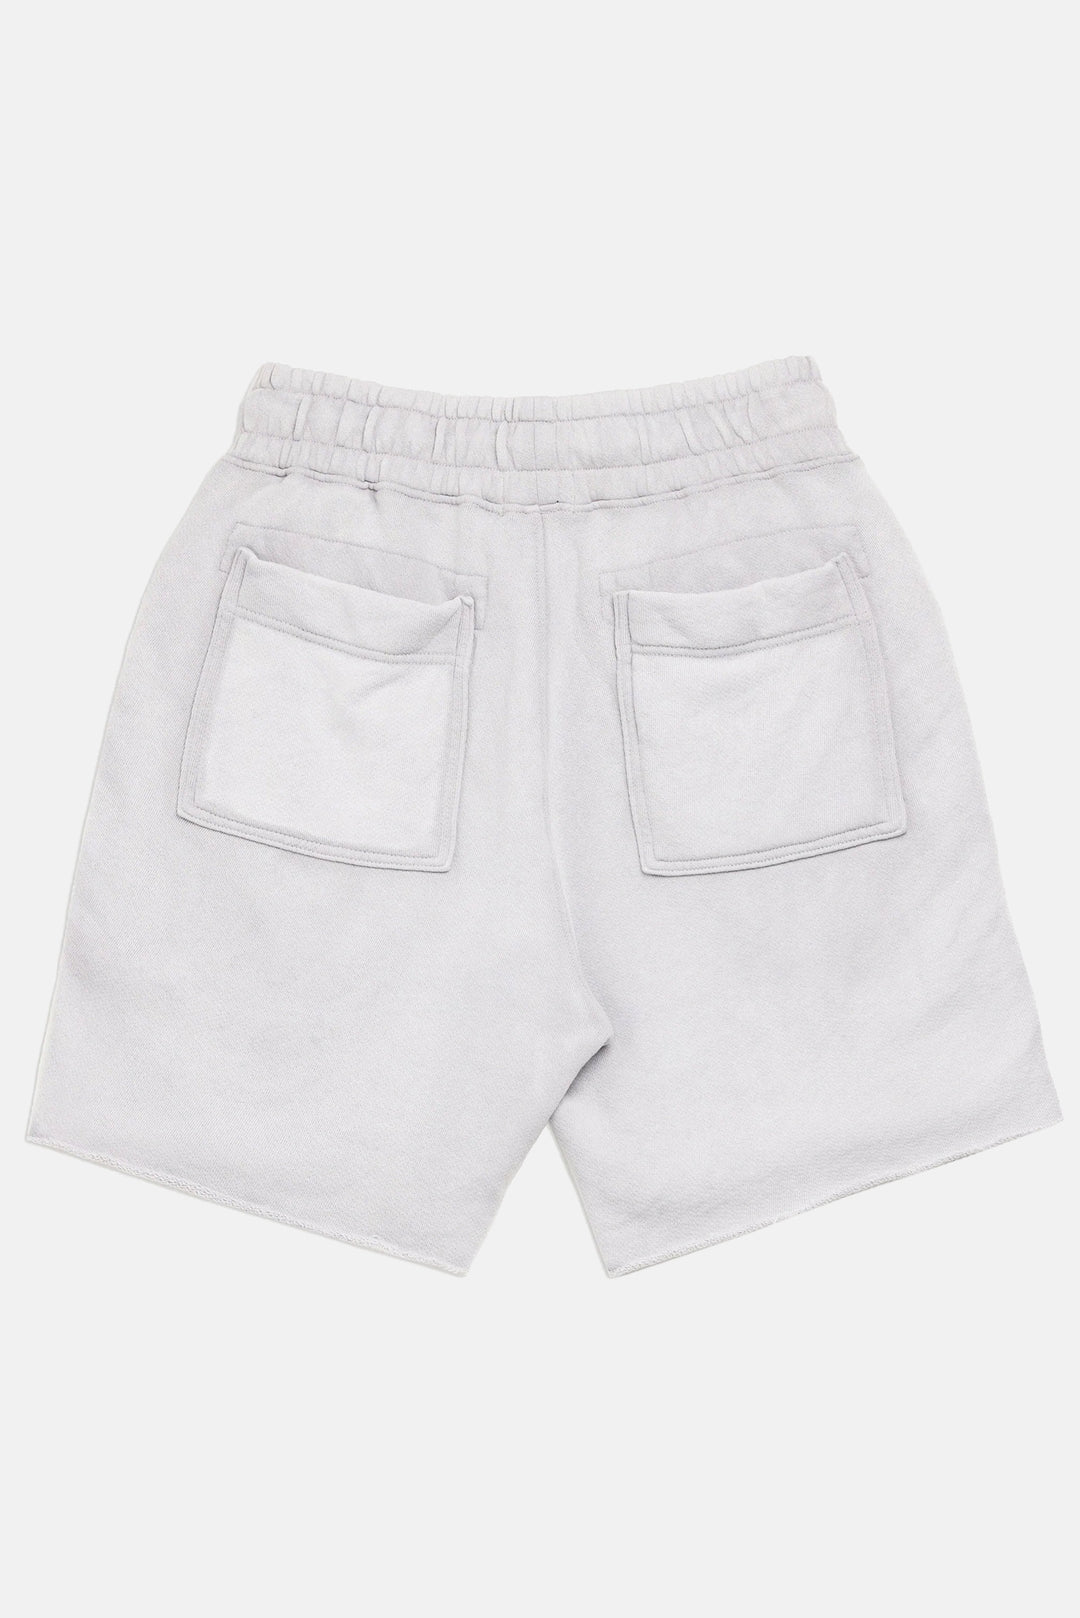 Bronx Shorts Vintage White Stone - blueandcream